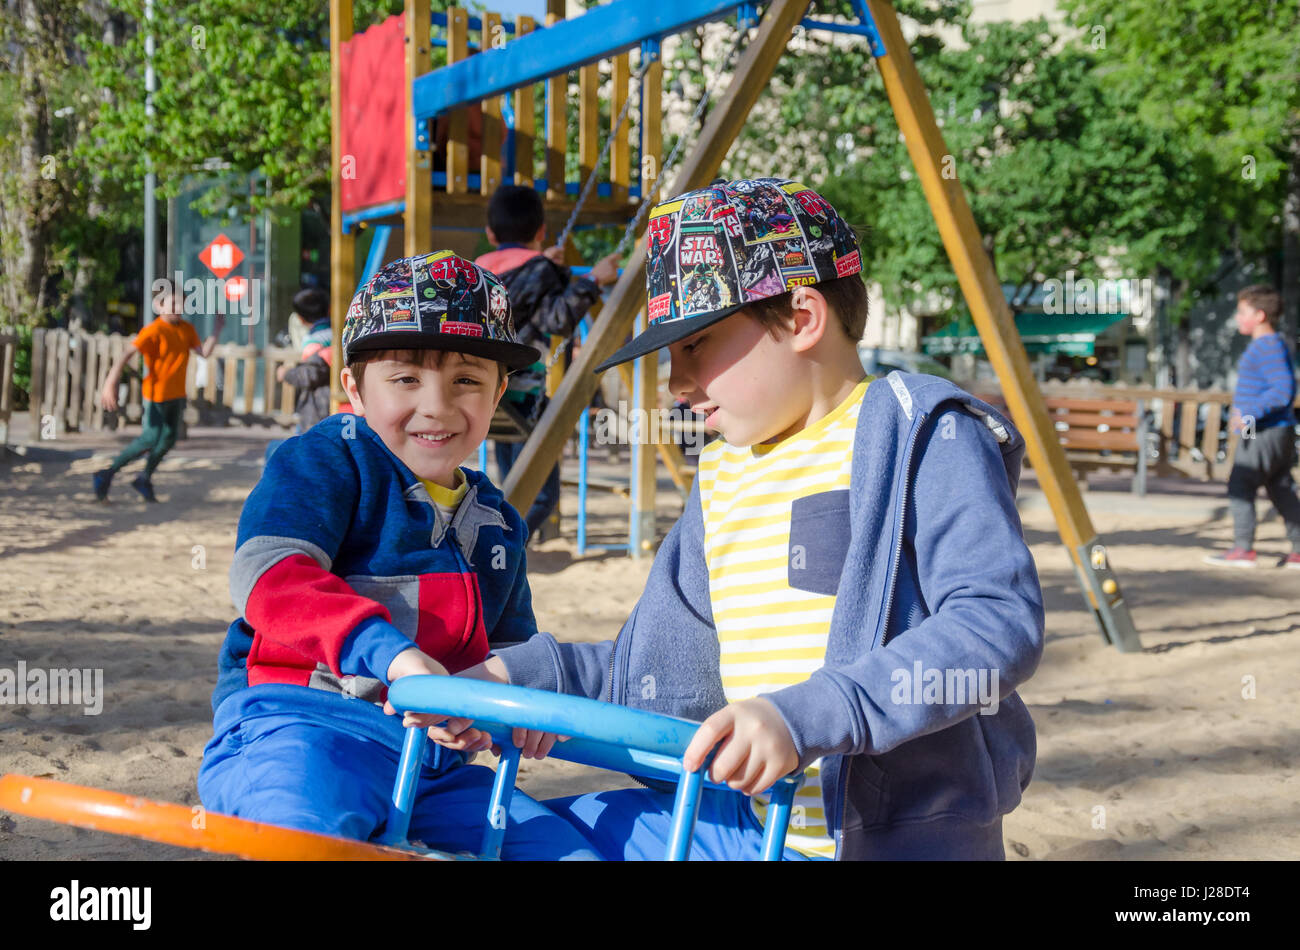 Junge Brüder spielen auf einer Springer-Wippe in einen Kinderspielplatz. Stockfoto